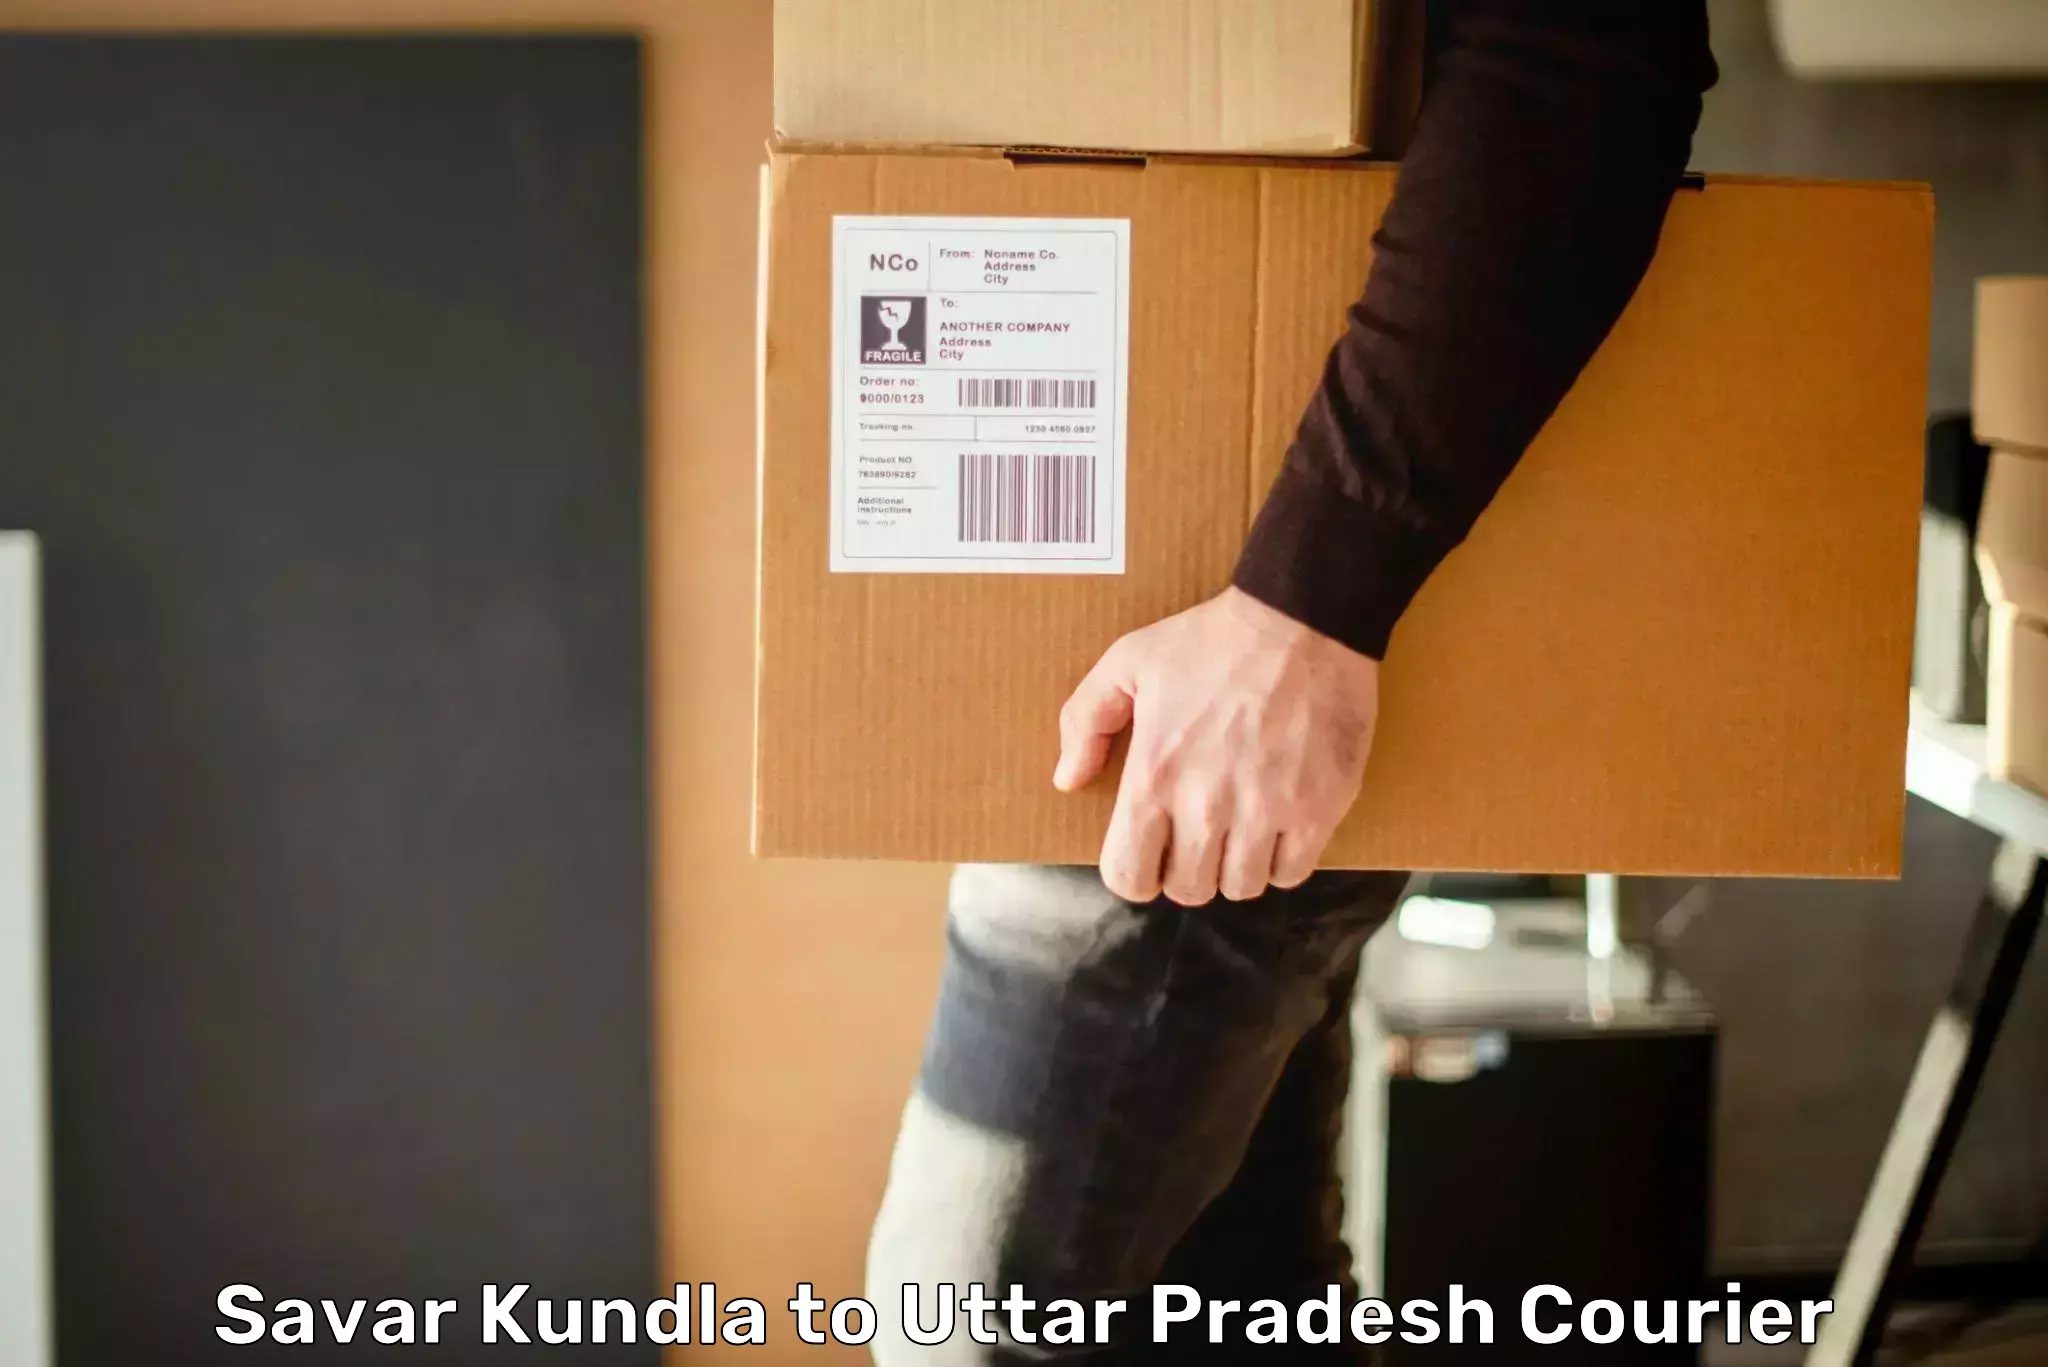 Supply chain delivery Savar Kundla to Khurja